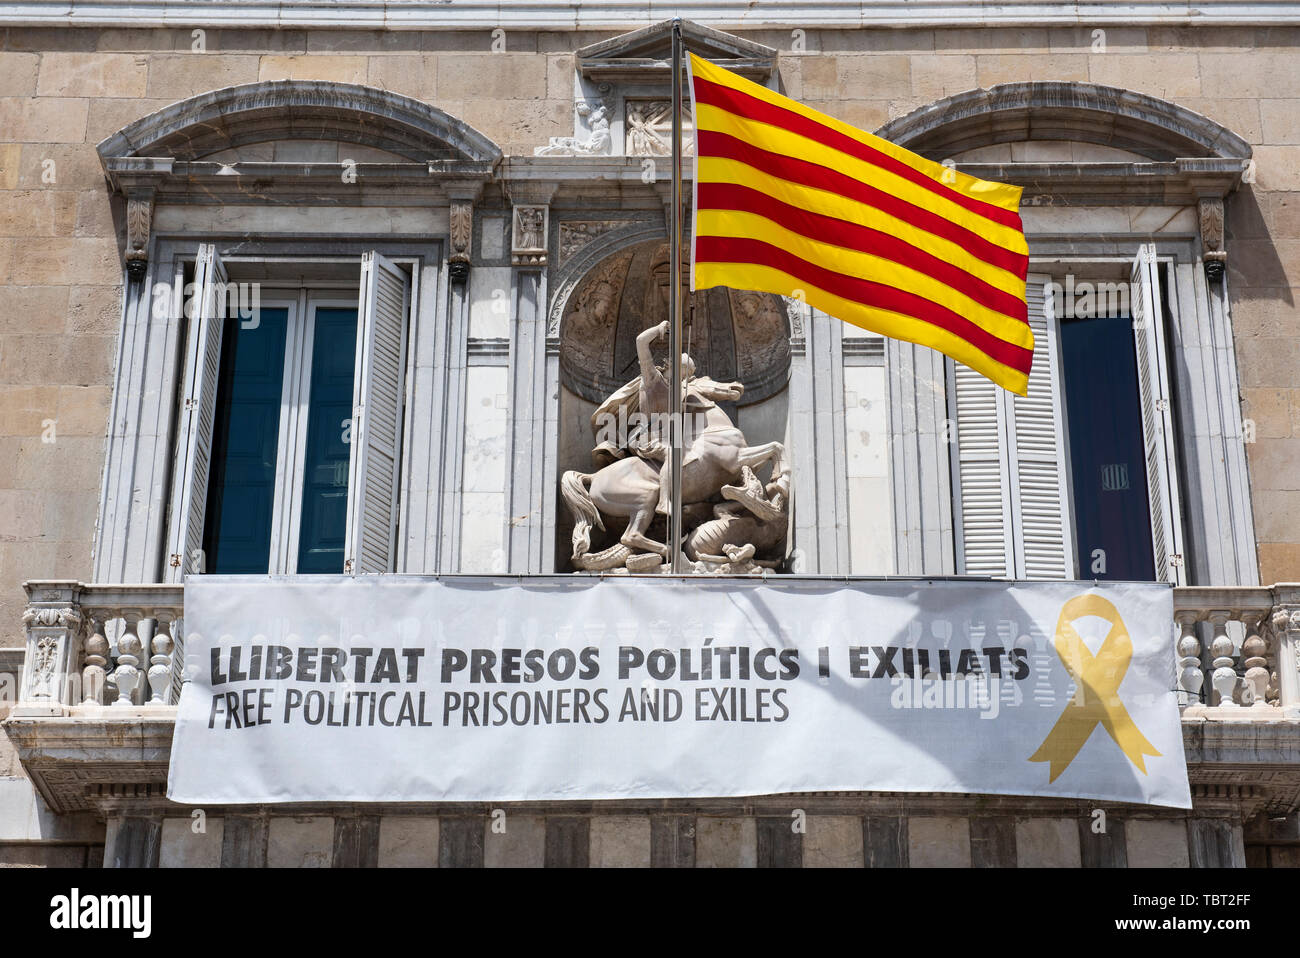 Der Palau de la Generalitat hängt ein gelbes Band und die katalanische Flagge in Unterstützung des inhaftierten Pro - Unabhängigkeit der Politiker. Stockfoto